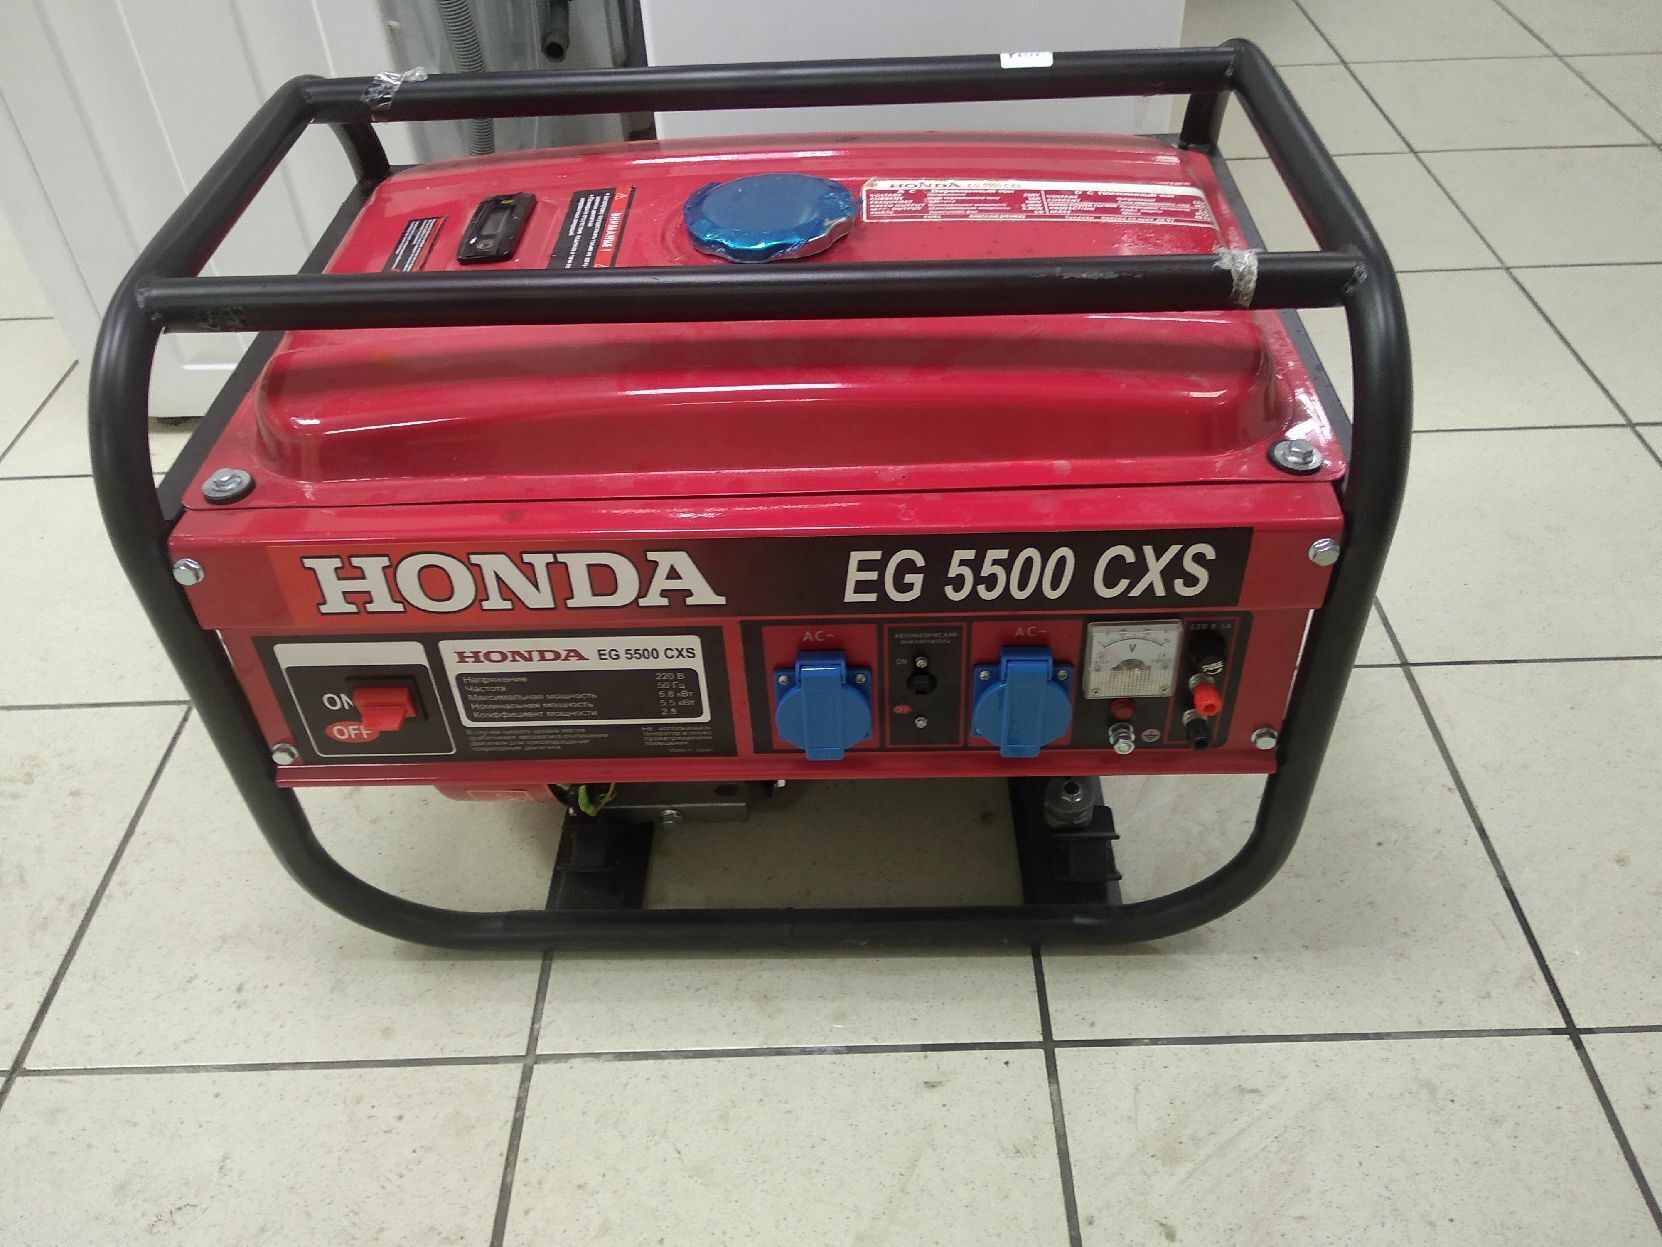 Honda 5500cxs. Хонда eg5500cxs. Миниэлектростанция Honda eg5500cxs. Honda EG 5500 CXS. Honda 5500 Генератор eg5500cxs бензиновый.